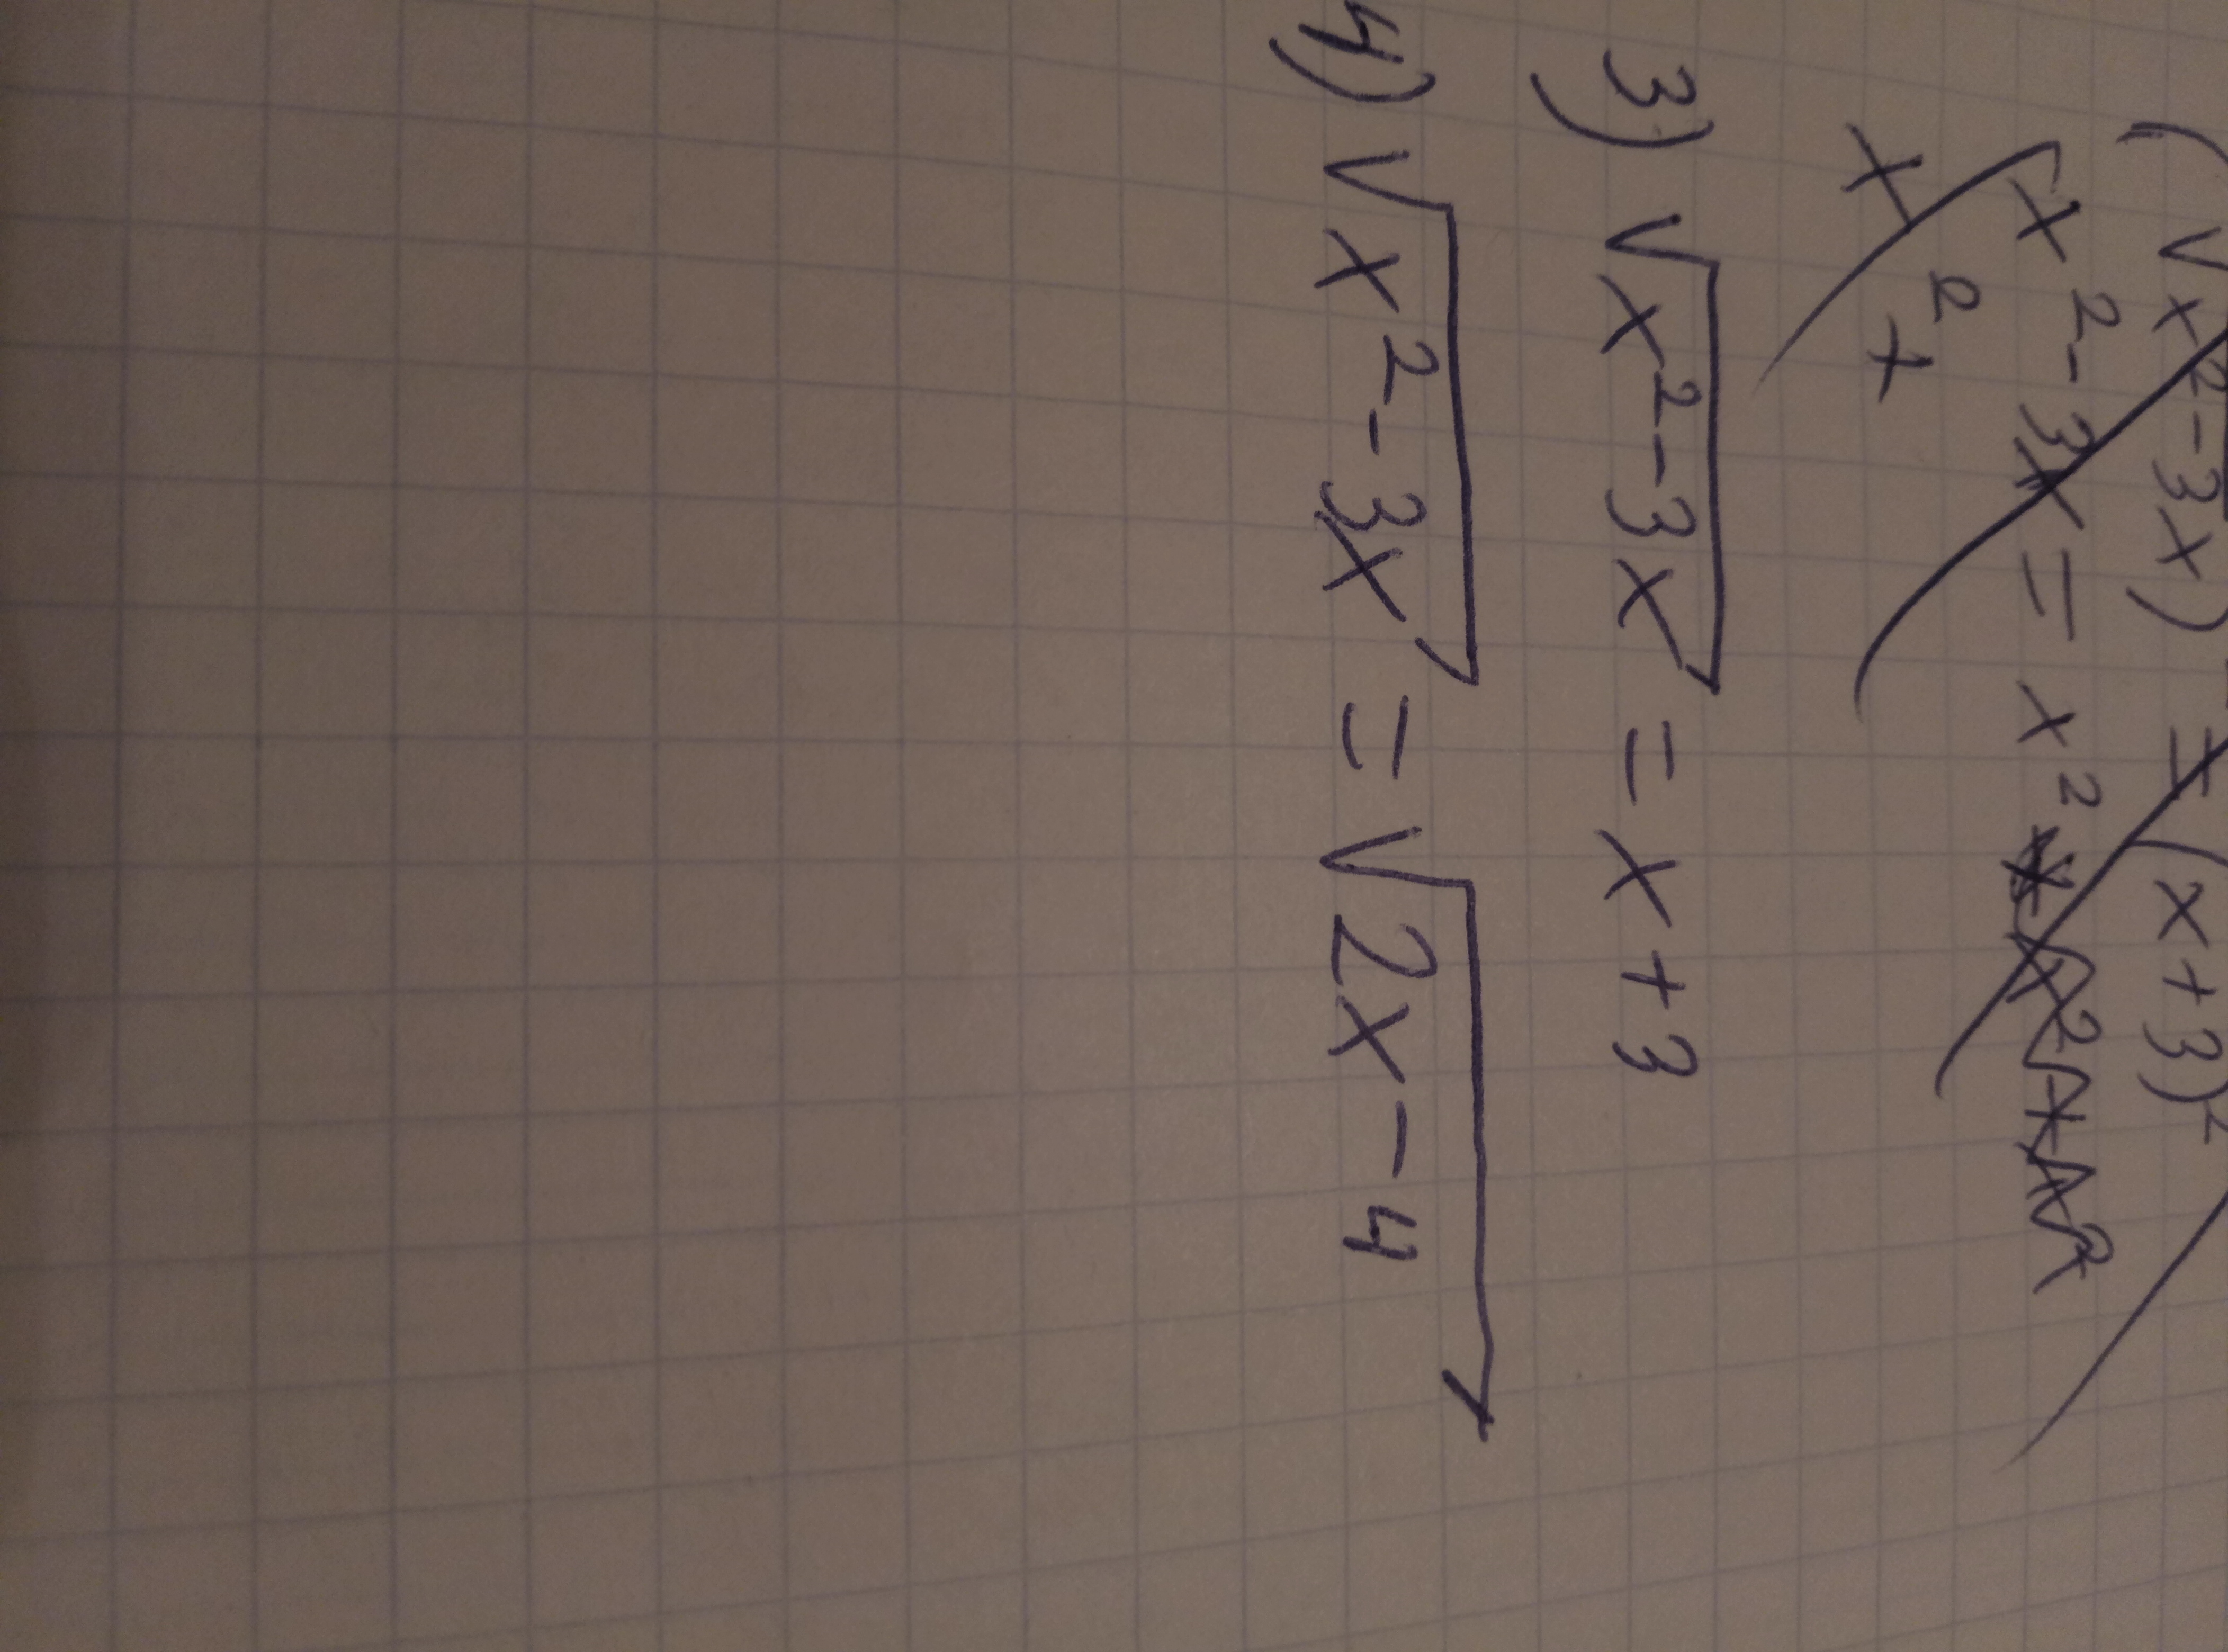 Иррациональные уравнения 8 класс + проверку, если можно?